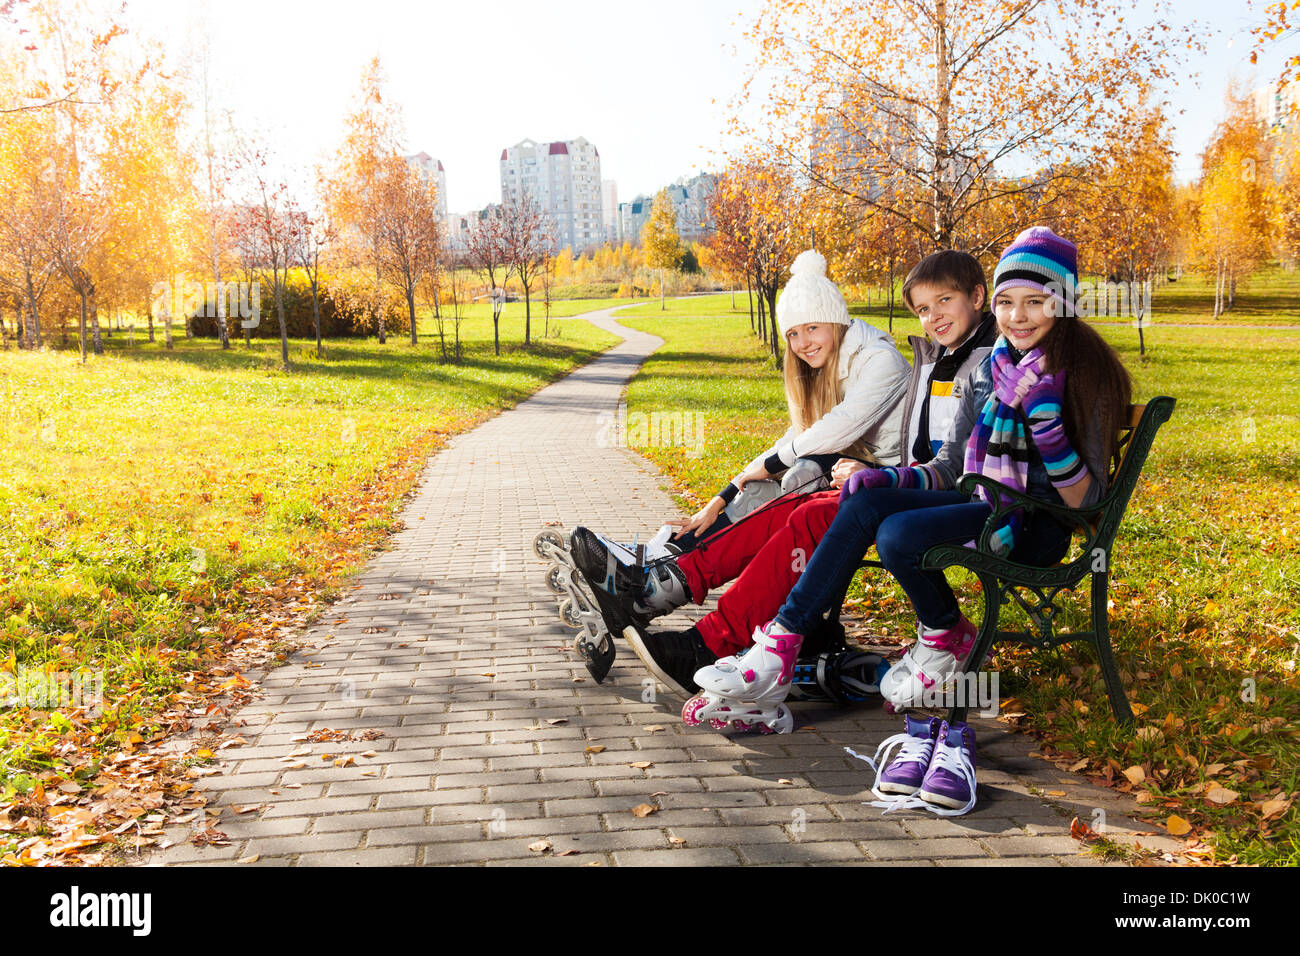 Zwei Mädchen und ein Junge auf Rollerblades sitzen auf der Bank im park Stockfoto